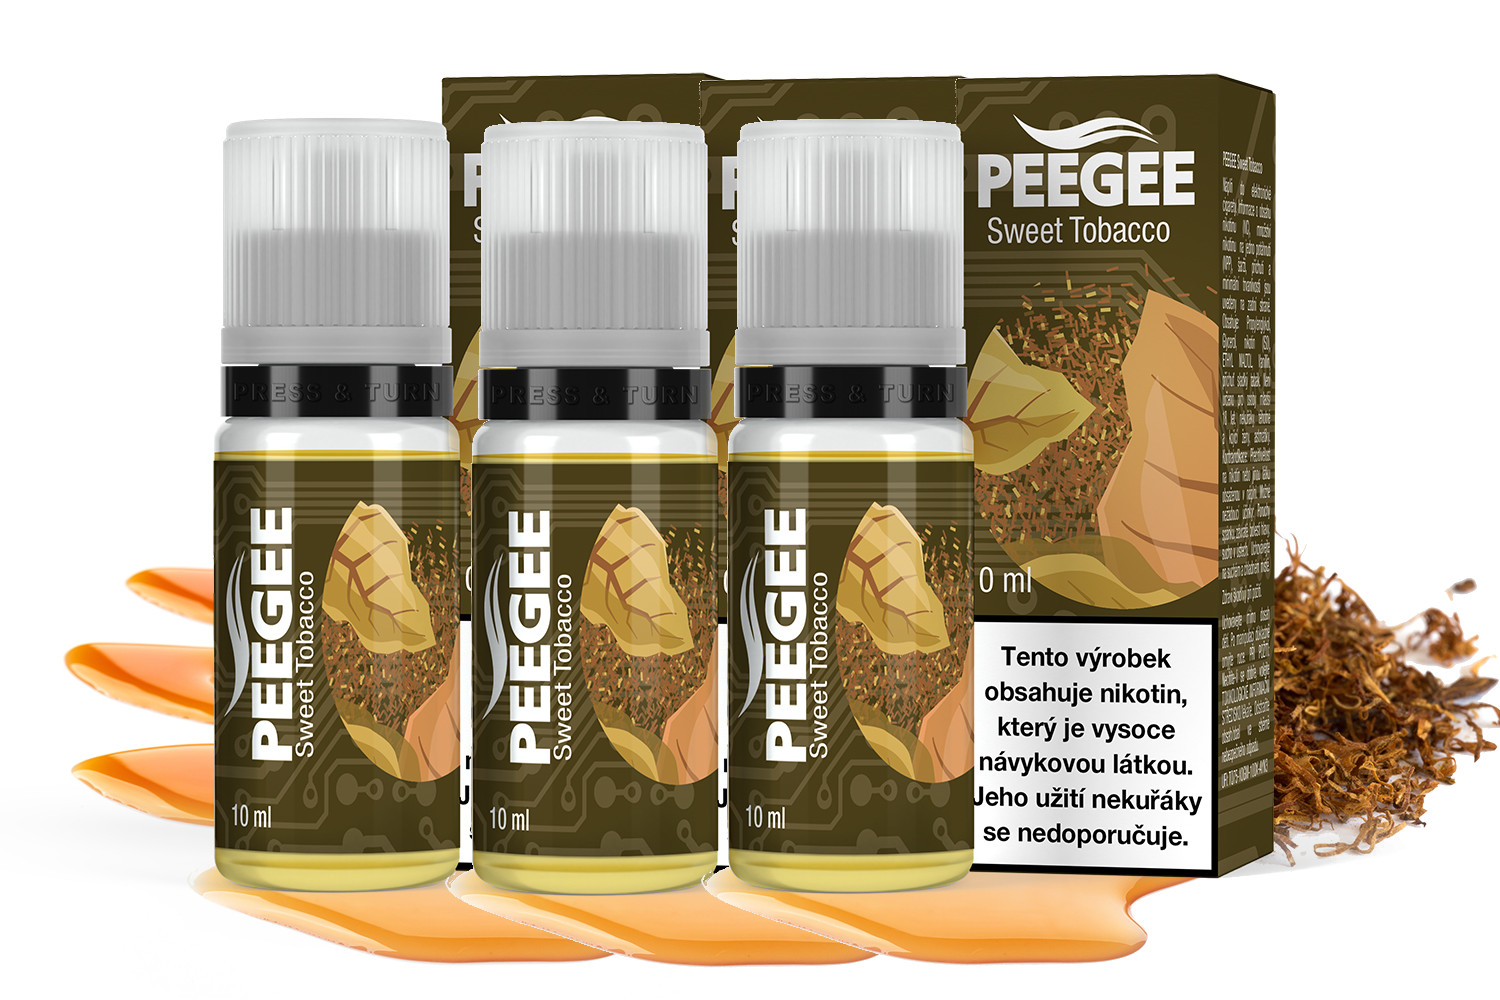 PEEGEE - Sladký tabák (Sweet Tobacco) 3x10ml Obsah nikotinu: 12mg